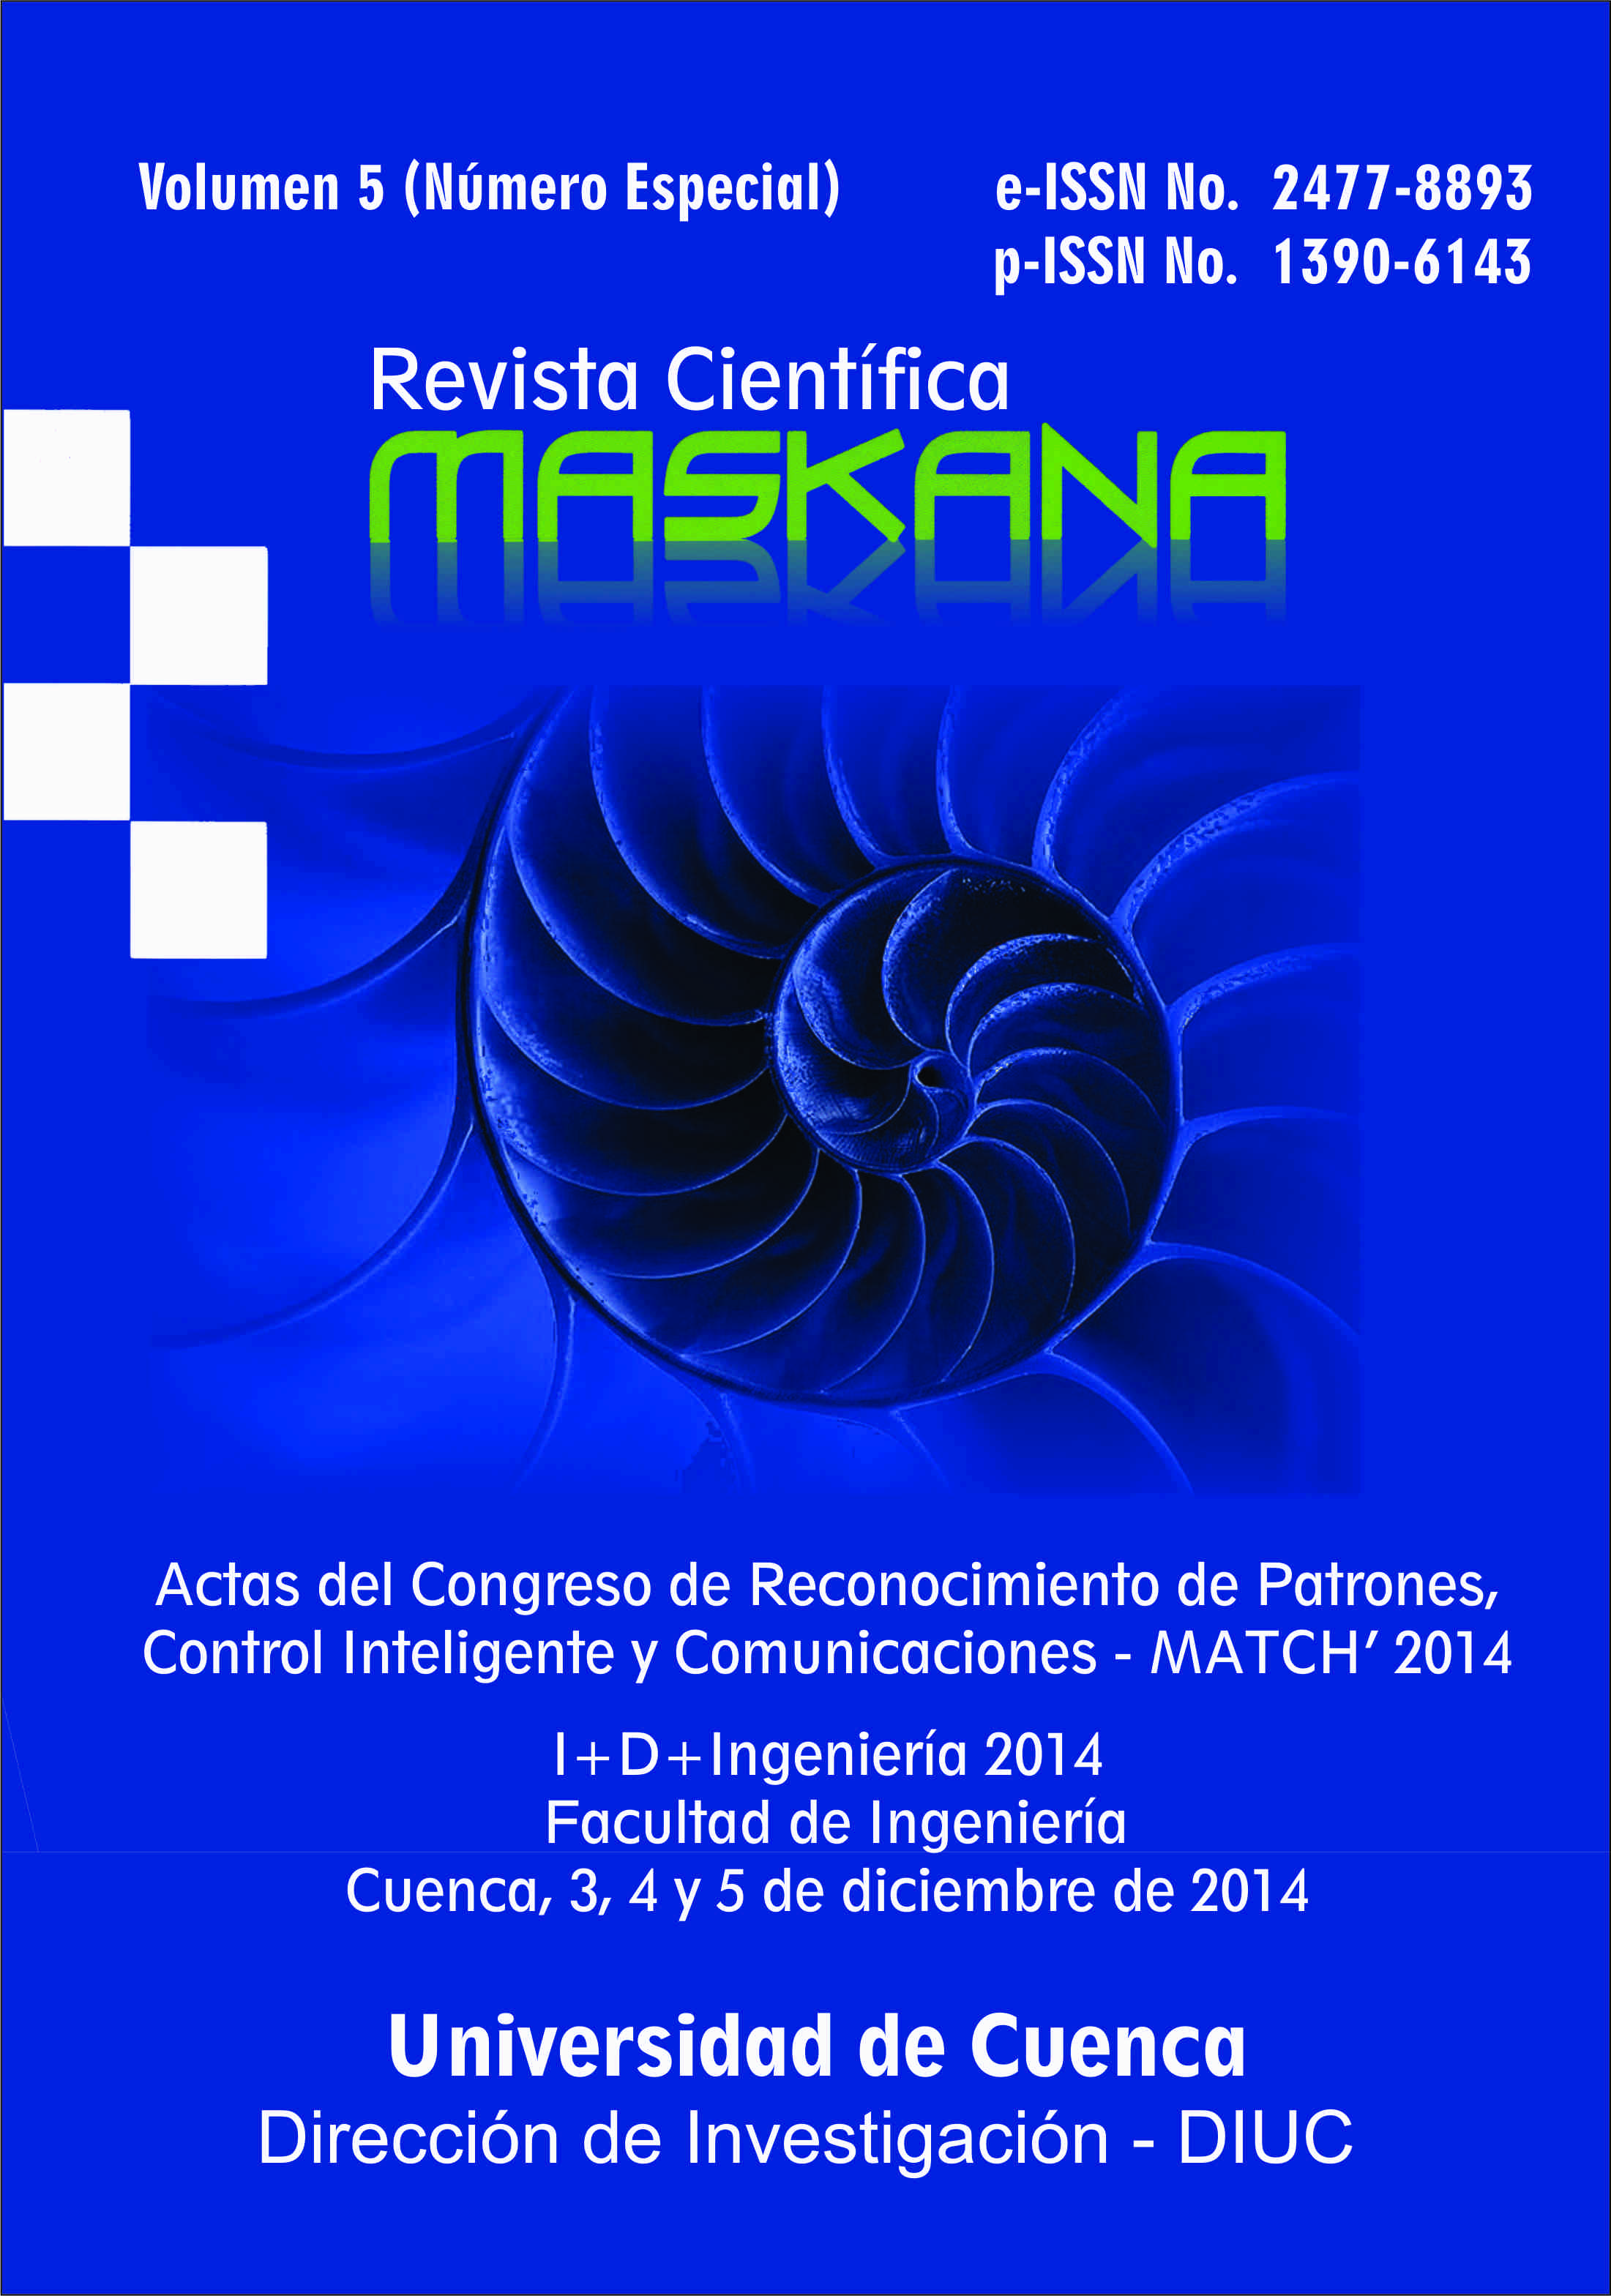 					Ver Vol. 5 (2014): Actas del Congreso de Reconocimiento de Patrones, Control Inteligente, Comunicaciones e Ingeniería Biomédica (MATCH’14)
				